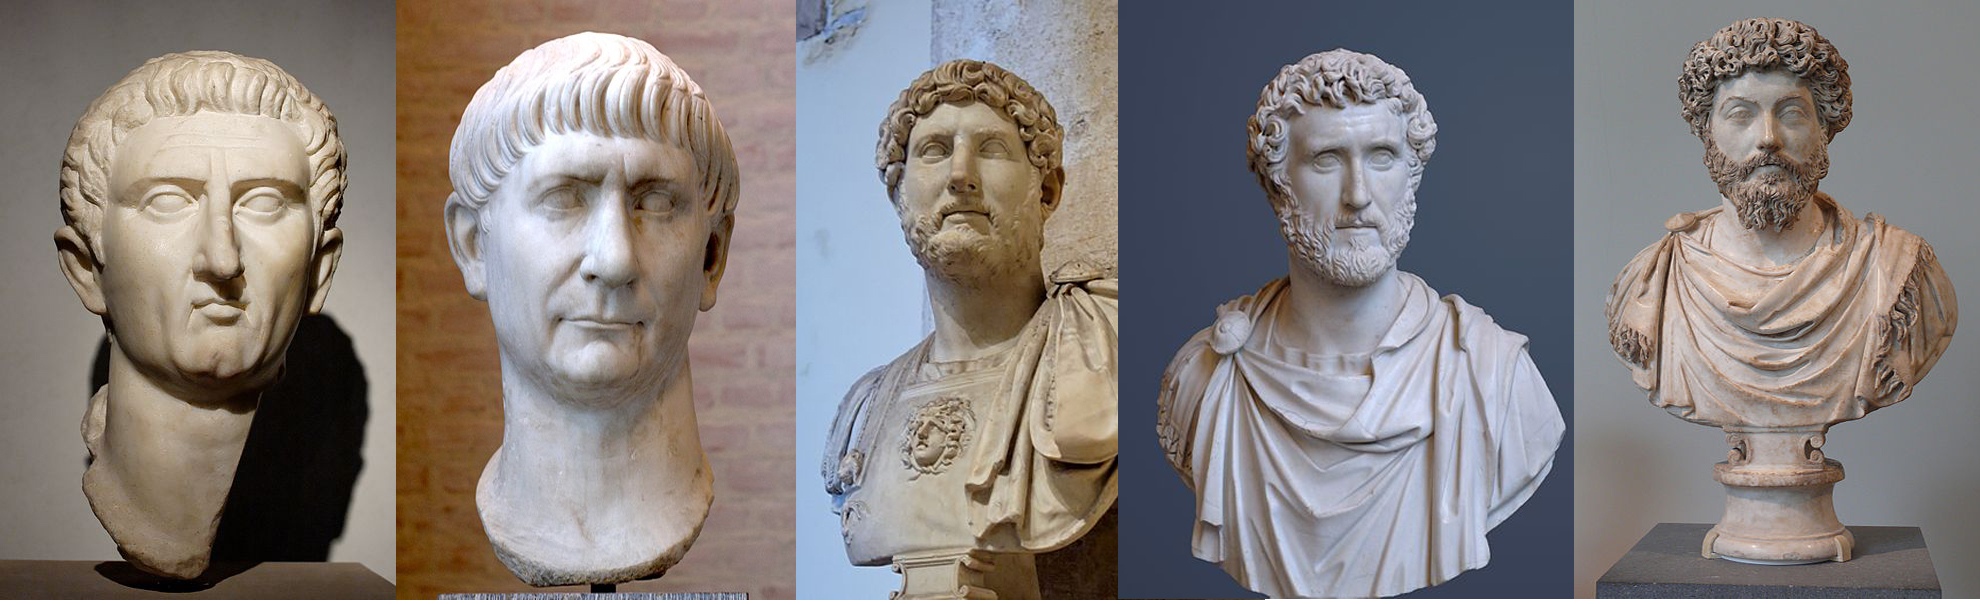 Римская империя: пять хороших императоров